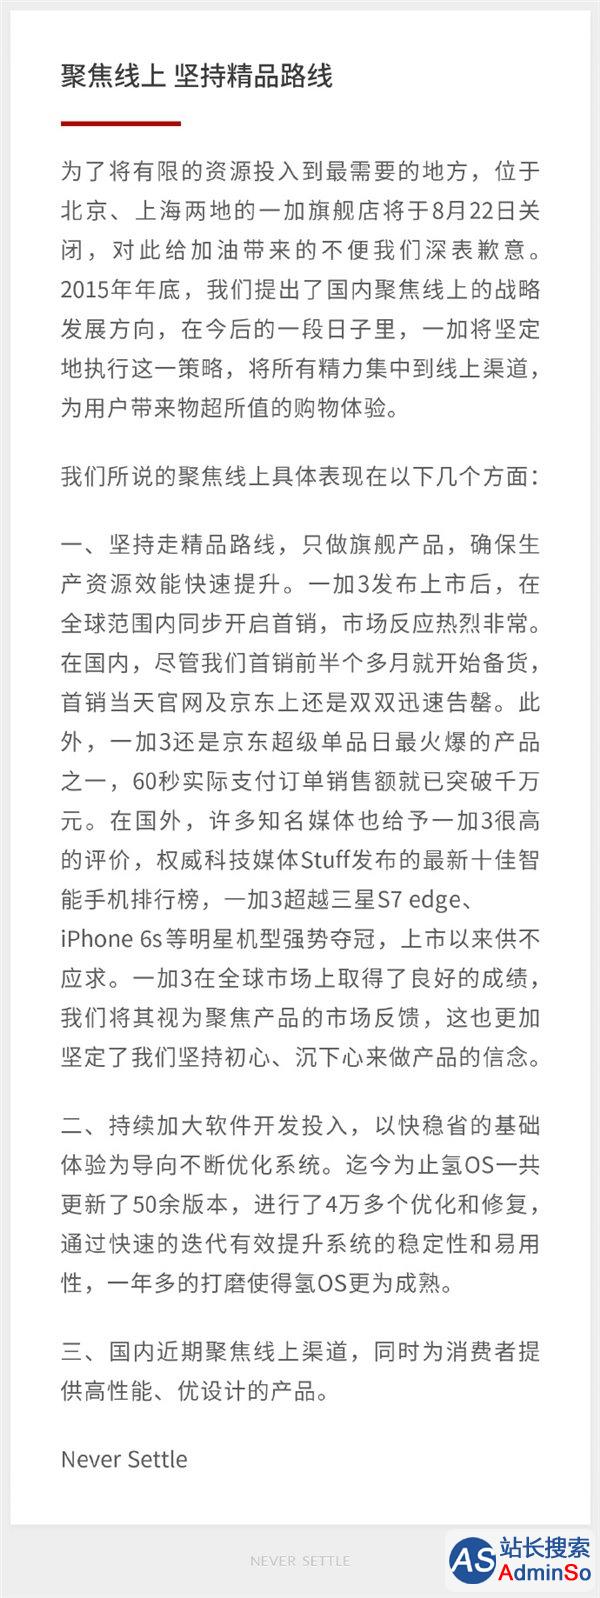 一加科技宣布关闭北京、上海两地旗舰店